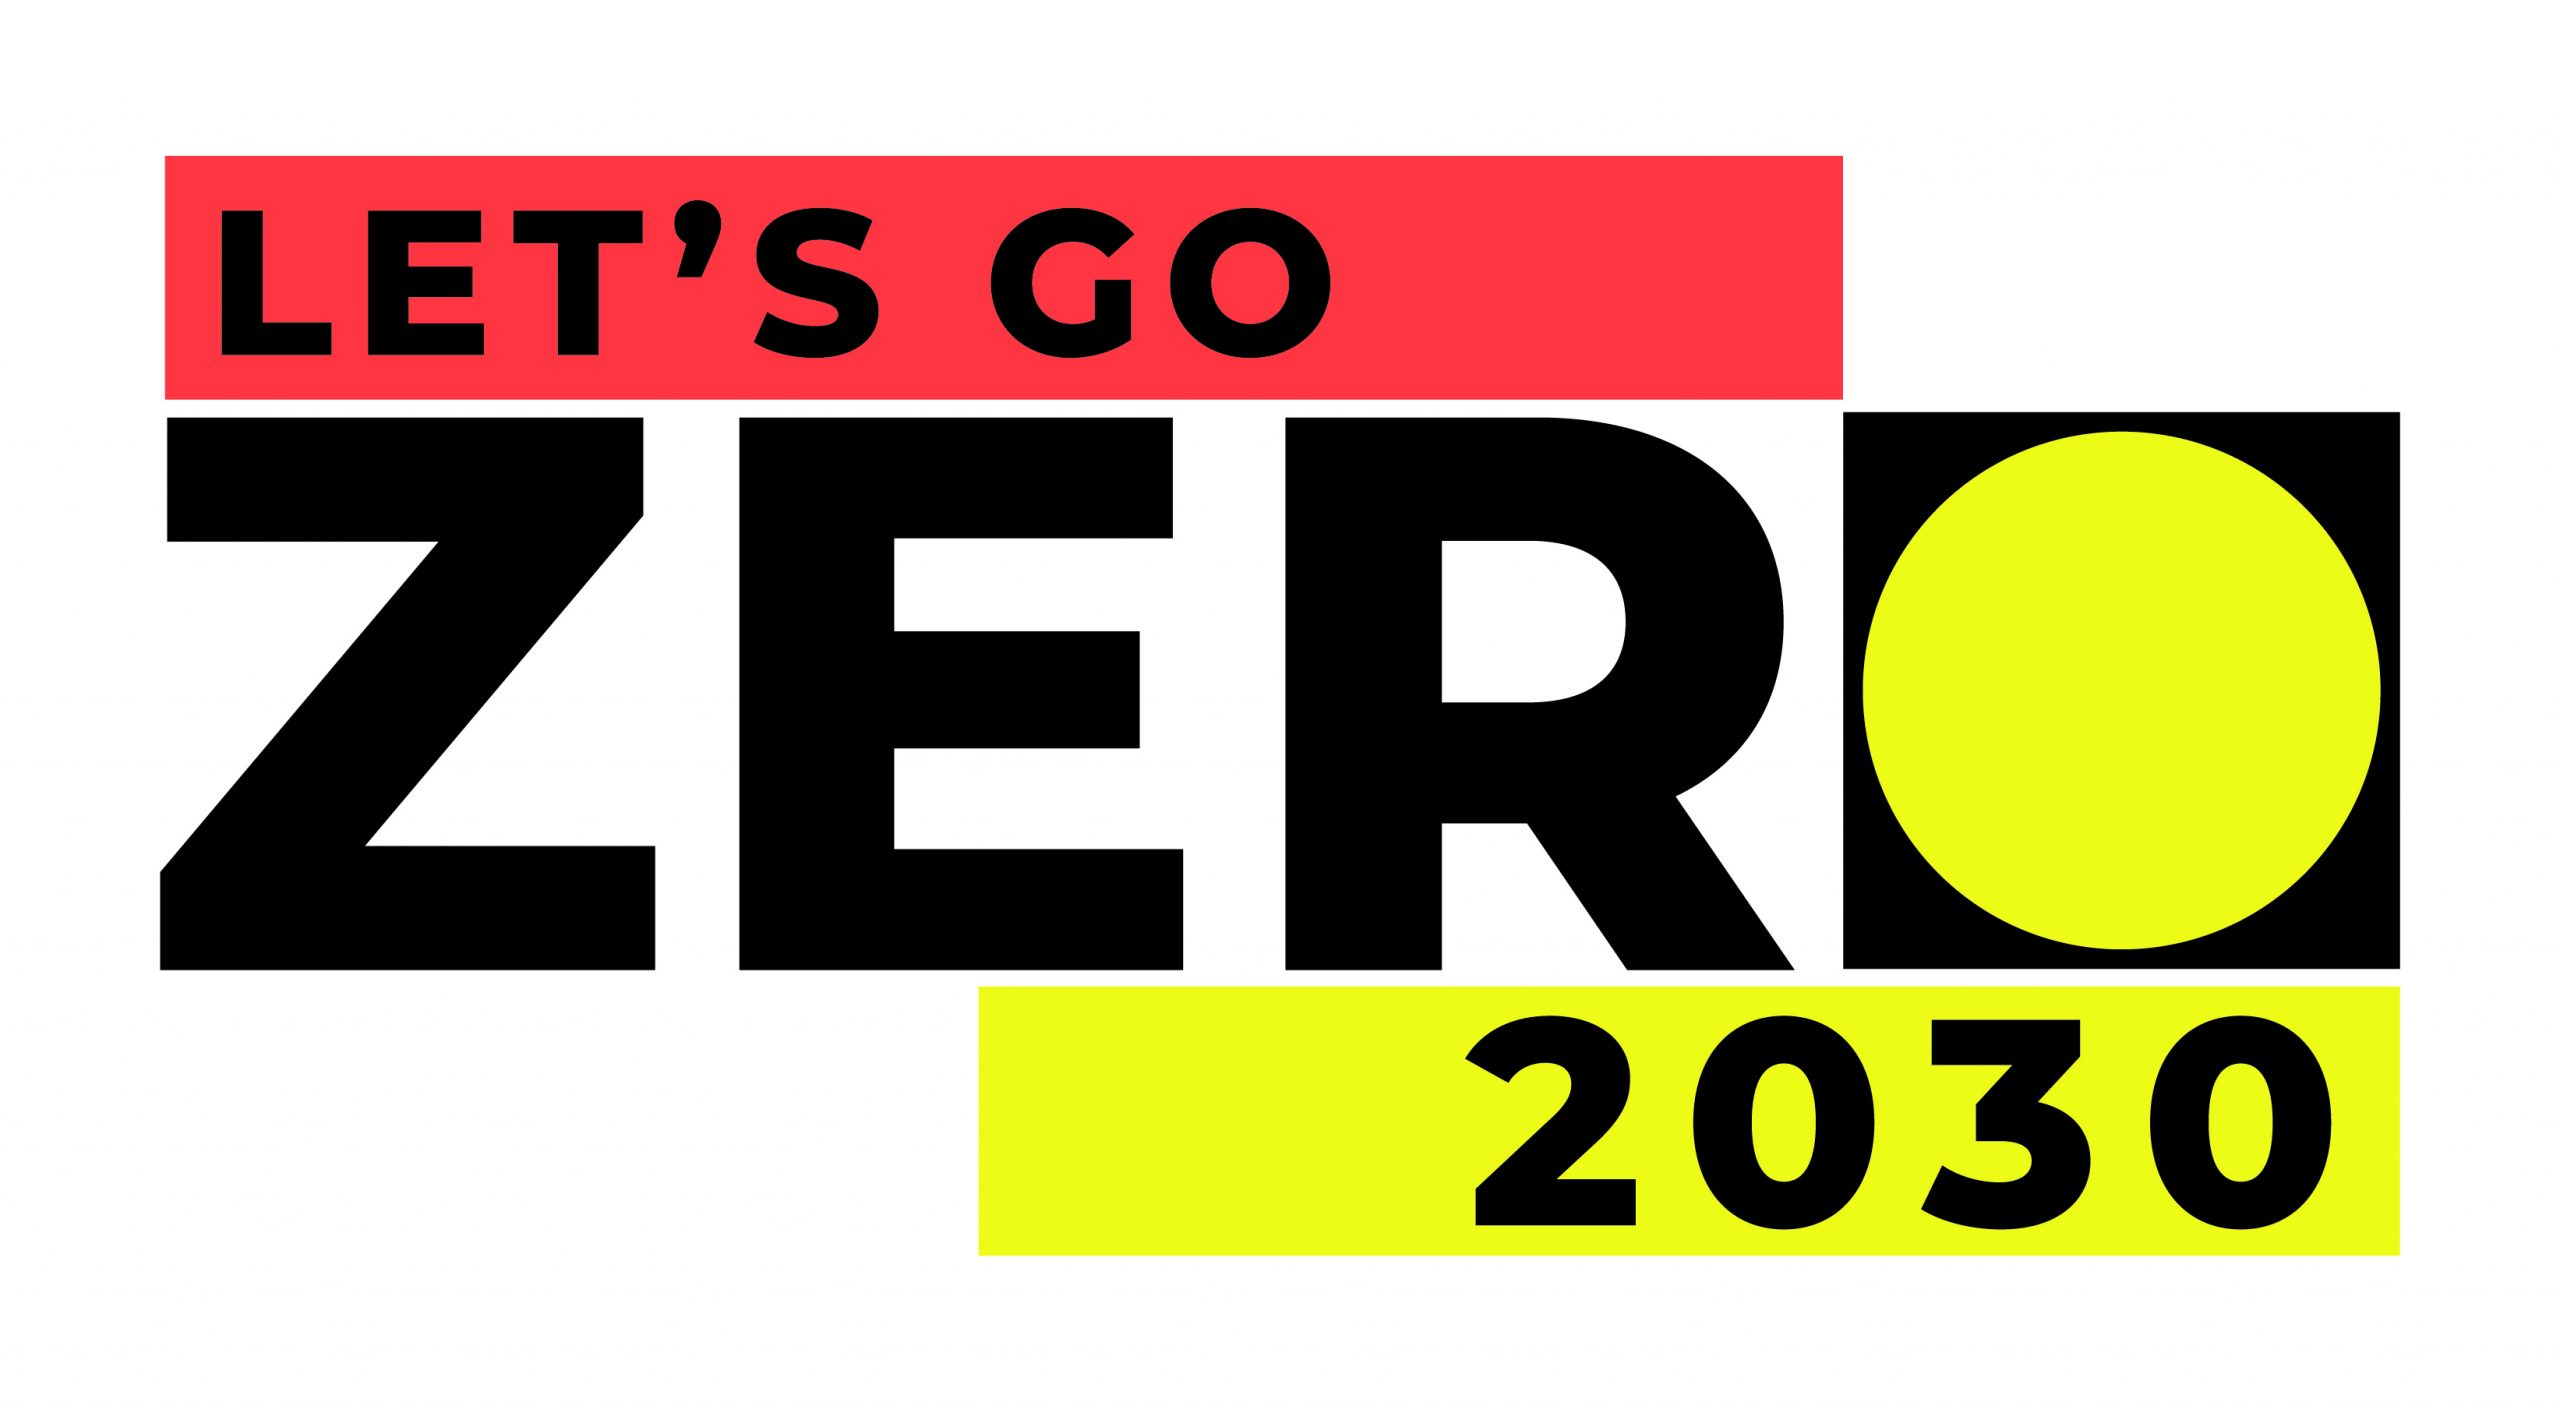 Let’s Go Zero